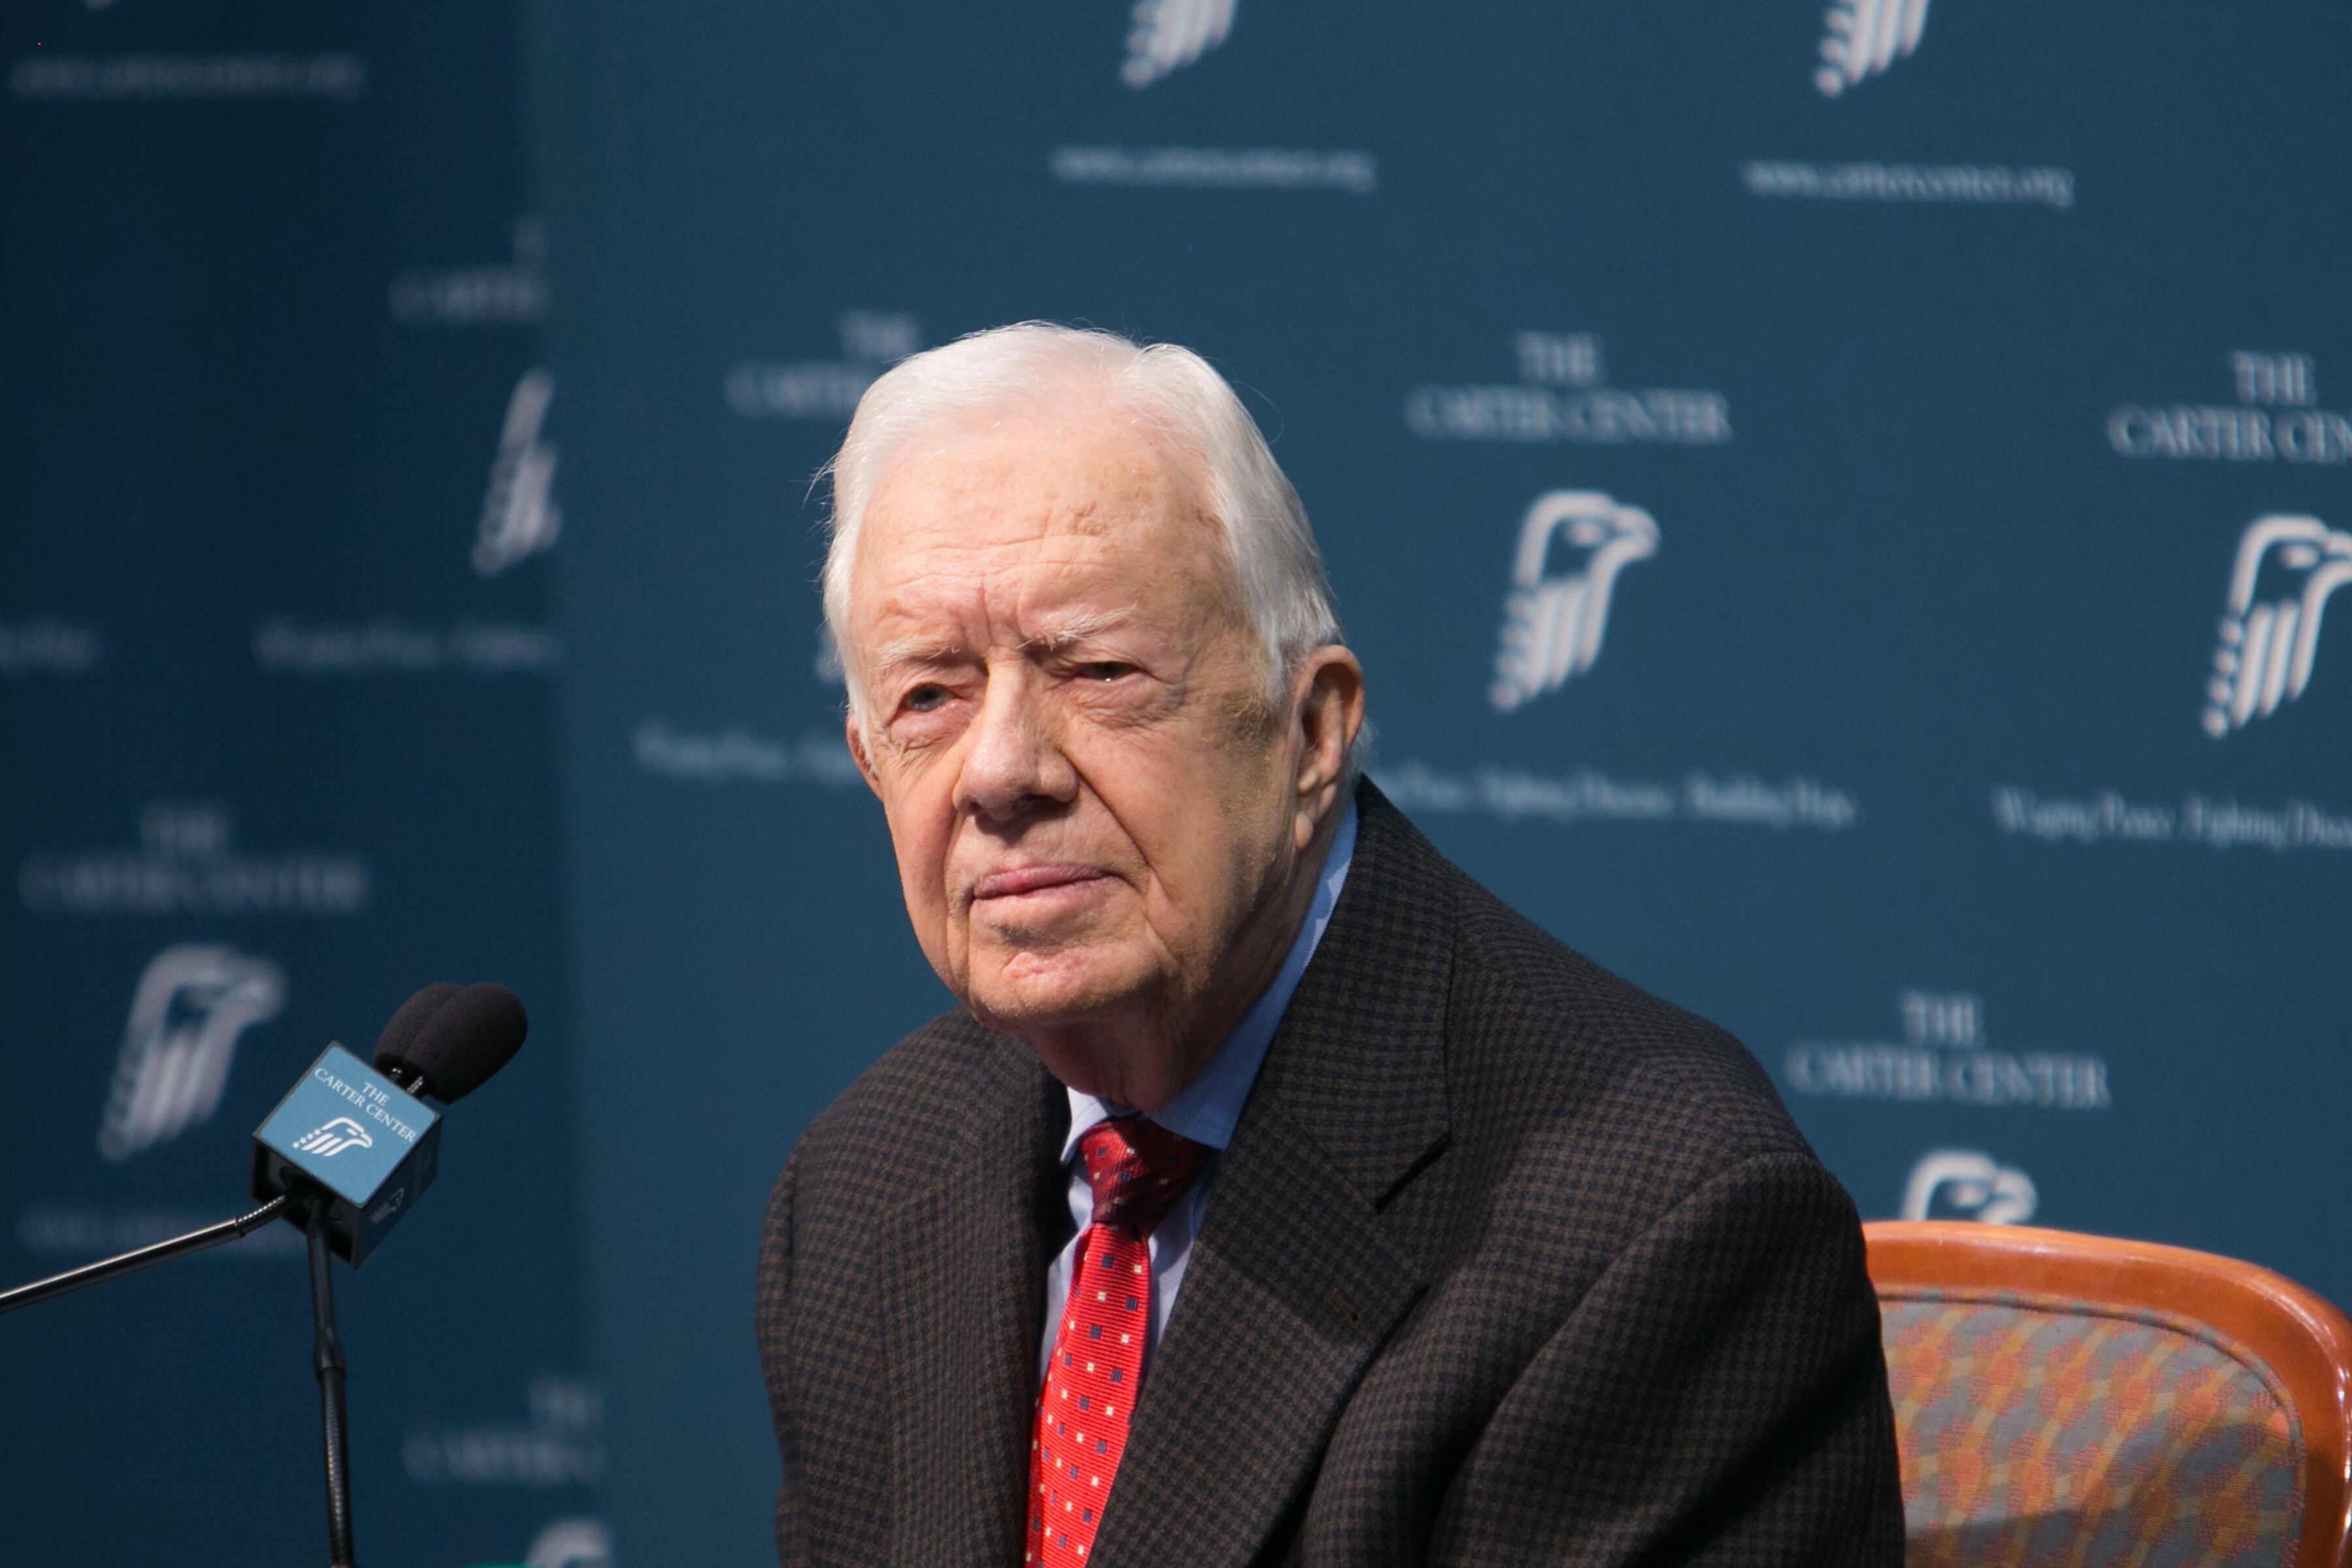 Jimmy Carter lors d'une conférence de presse au Carter Center le 20 août 2015 à Atlanta, Géorgie | Photo: Jessica McGowan / Getty Images